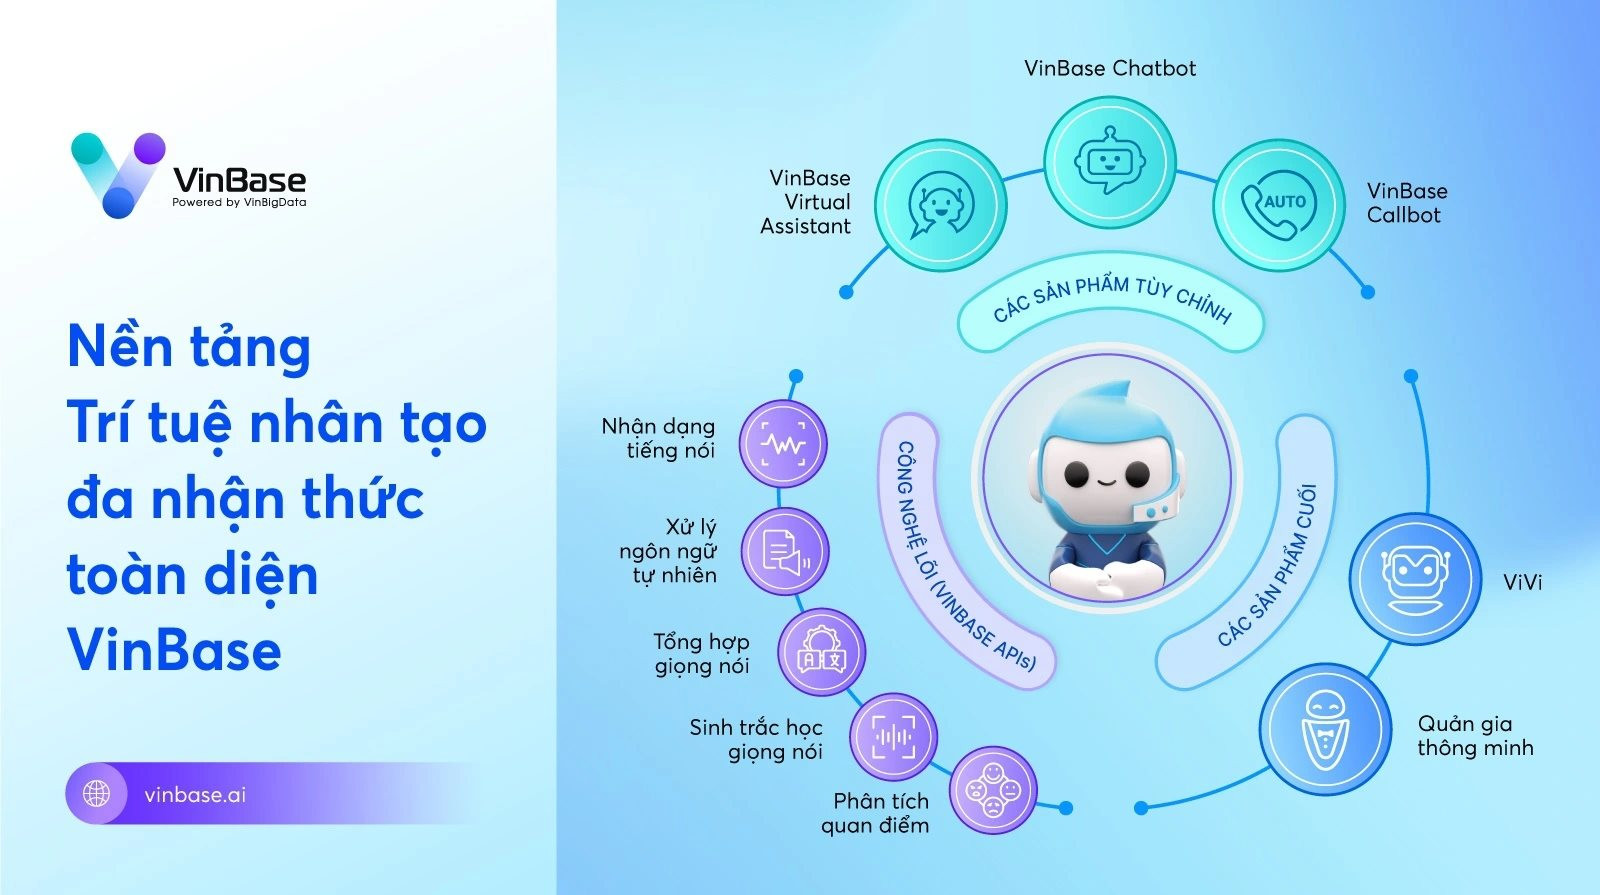 VinBigdata phát triển công nghệ AI tạo sinh, sẽ sớm cho ra mắt 'ChatGPT phiên bản Việt'